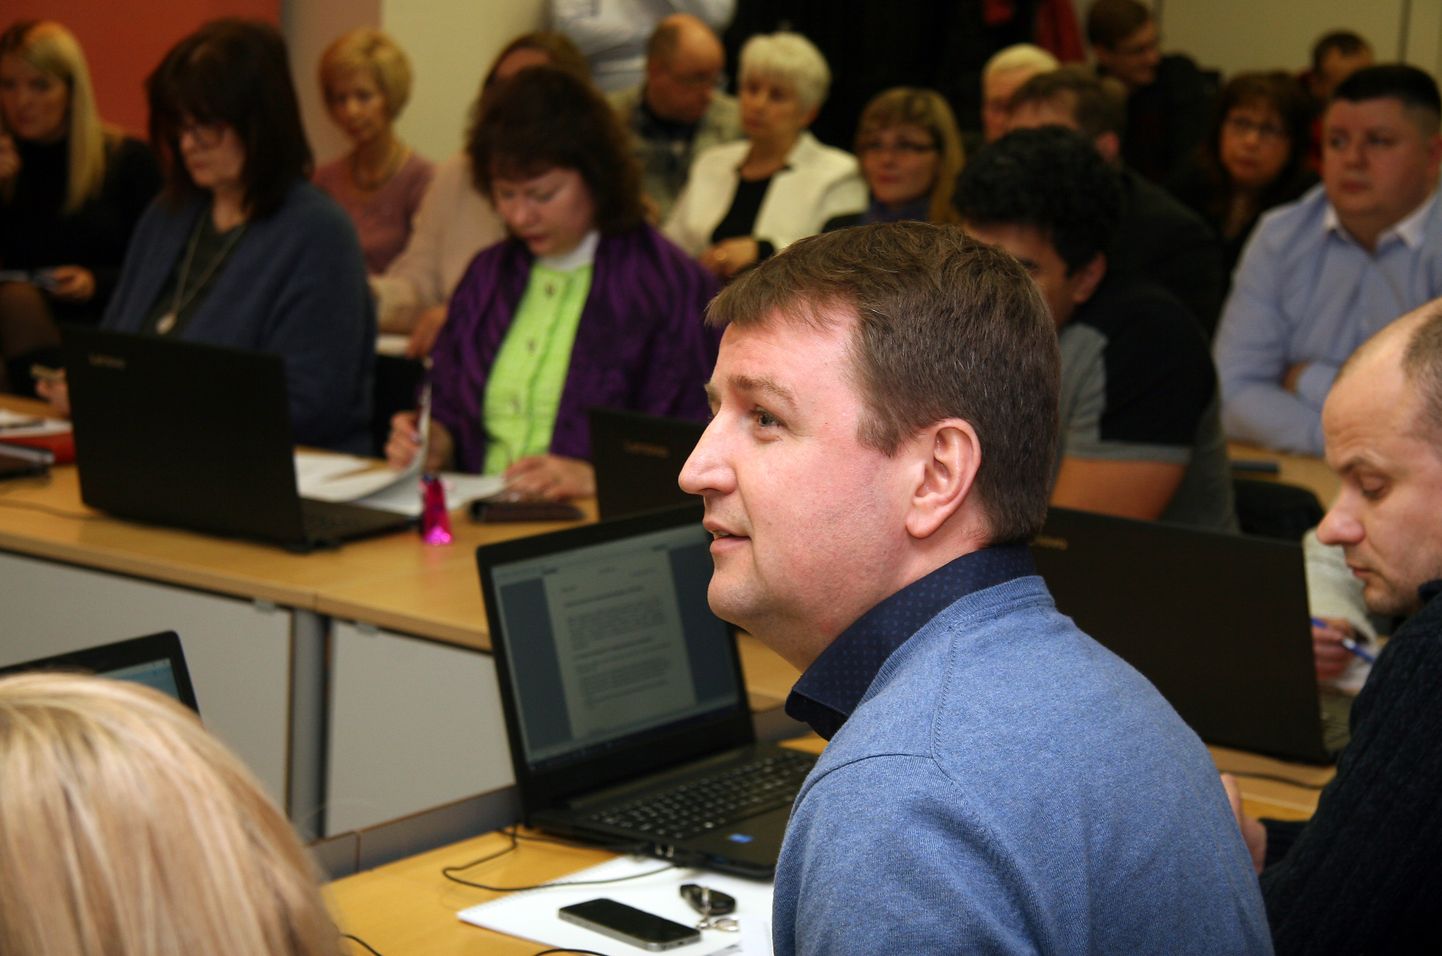 Eduard Odinets kuulub Kohtla-Järve linnavolikogusse alates 1996. aastast, riigikogusse on ta kandideerinud neljal korral, kuid pole seni valituks osutunud.